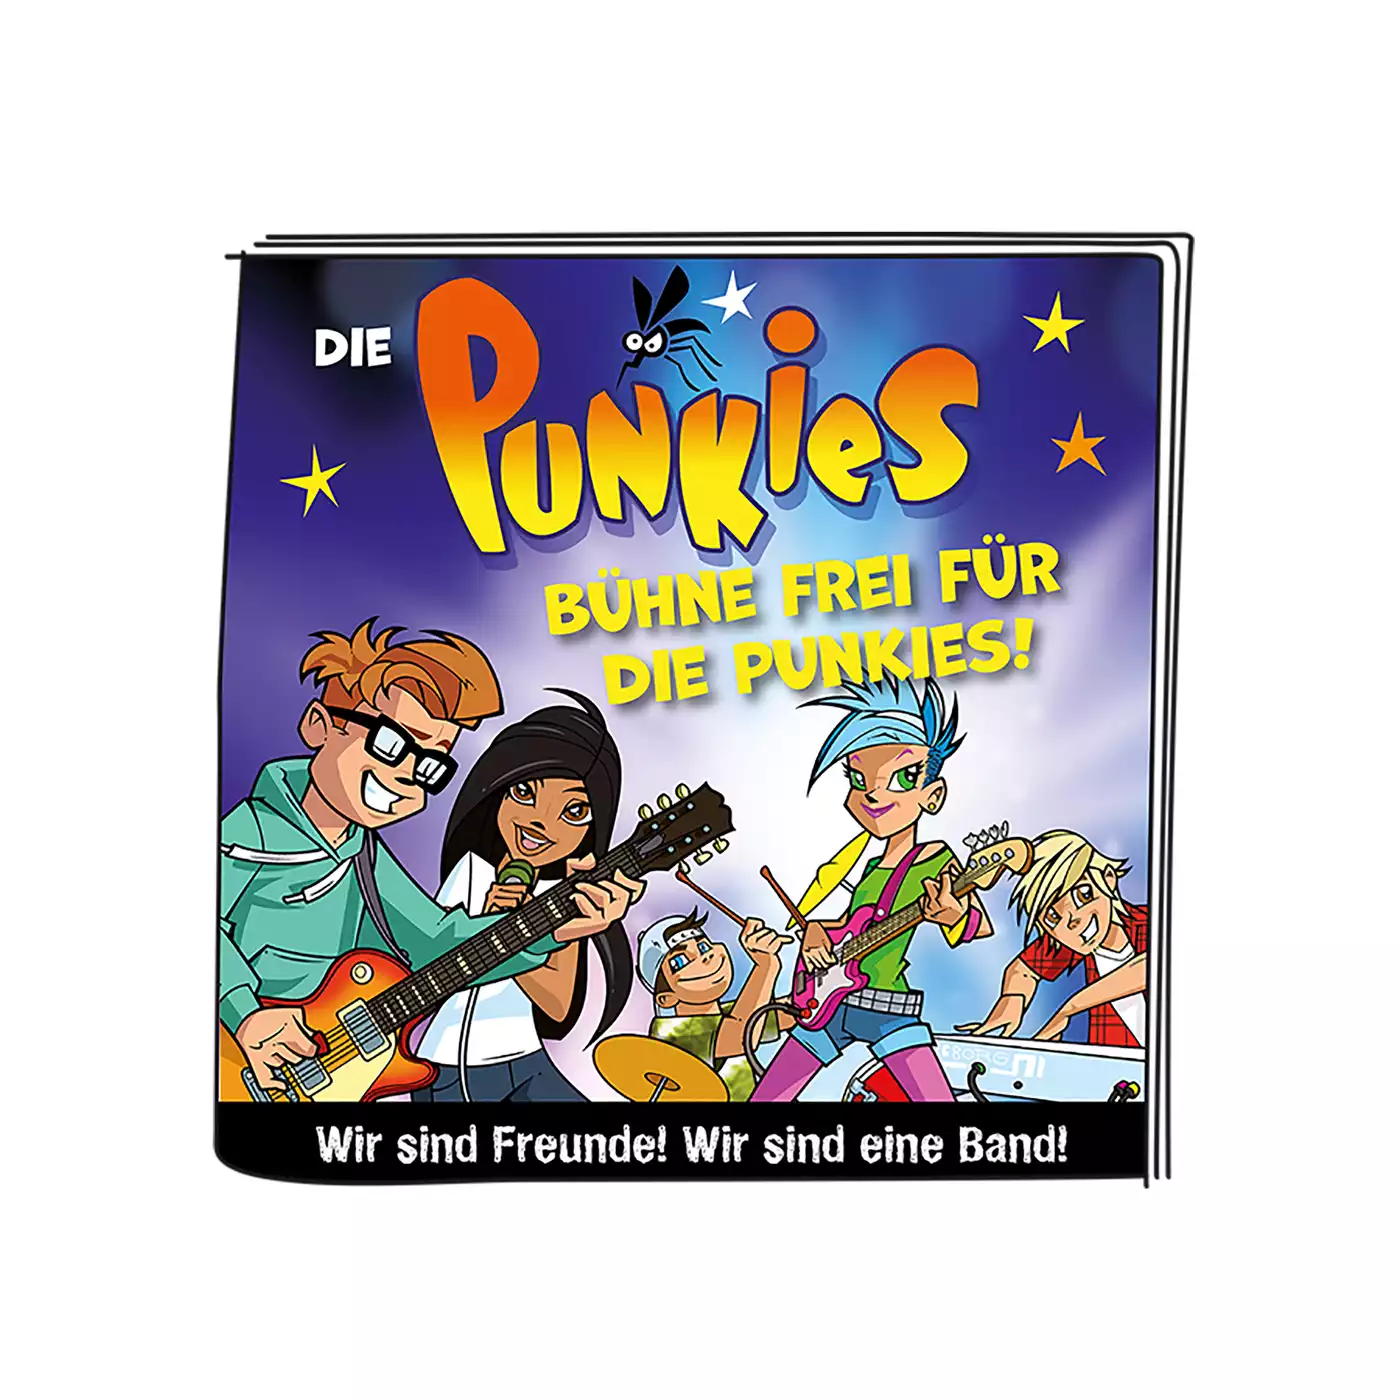 Die Punkies - Bühne frei für die Punkies tonies 2000576076636 5